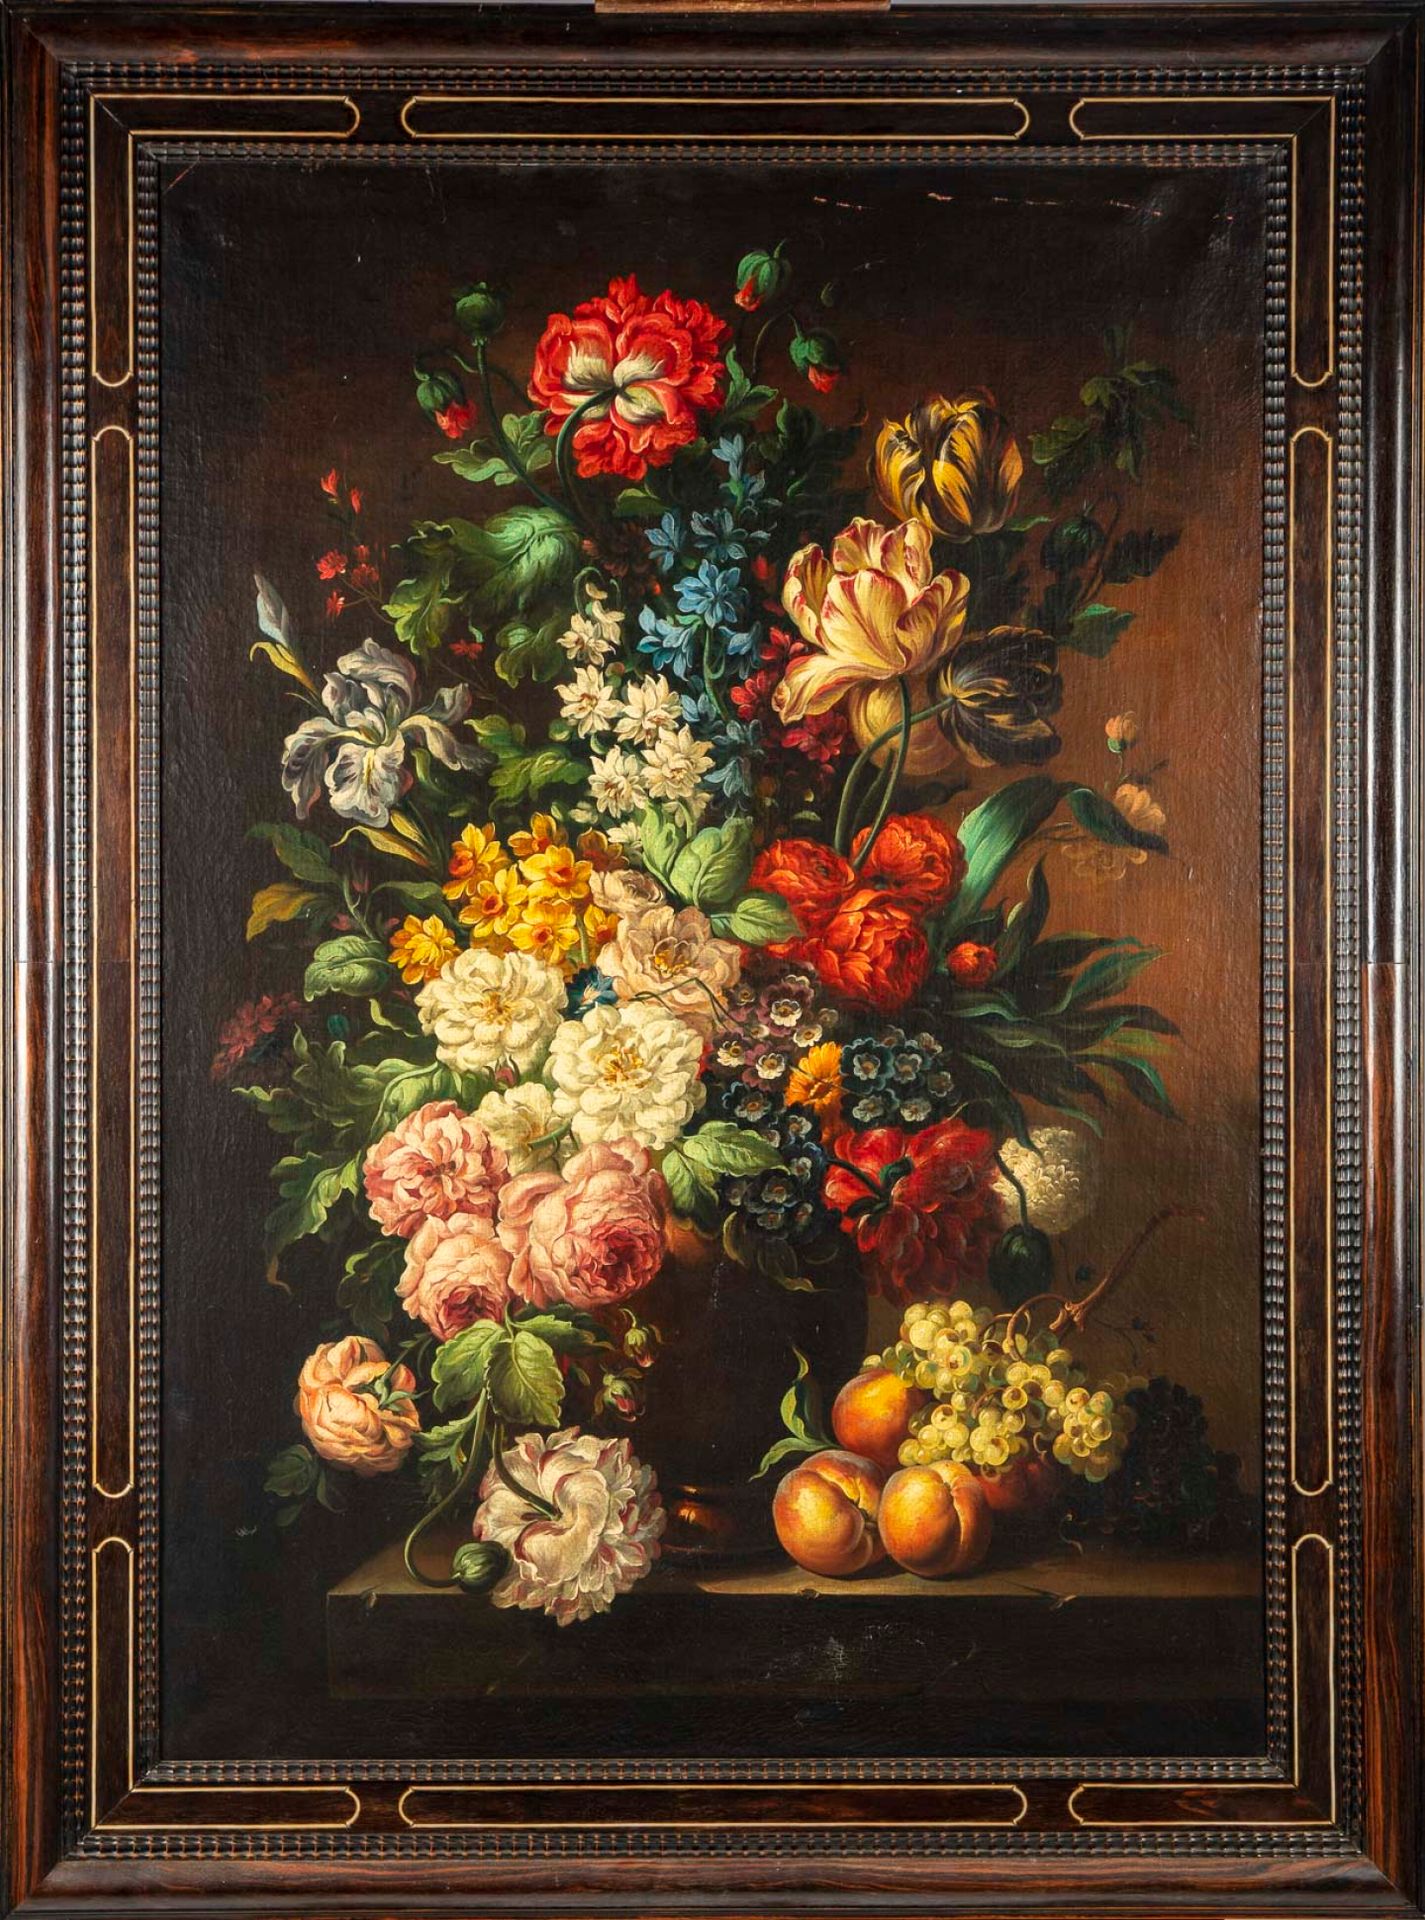 ECOLE HOLLANDAISE XIXe SCUOLA DI HOLLAND del XIX secolo

Mazzo di fiori su una t&hellip;